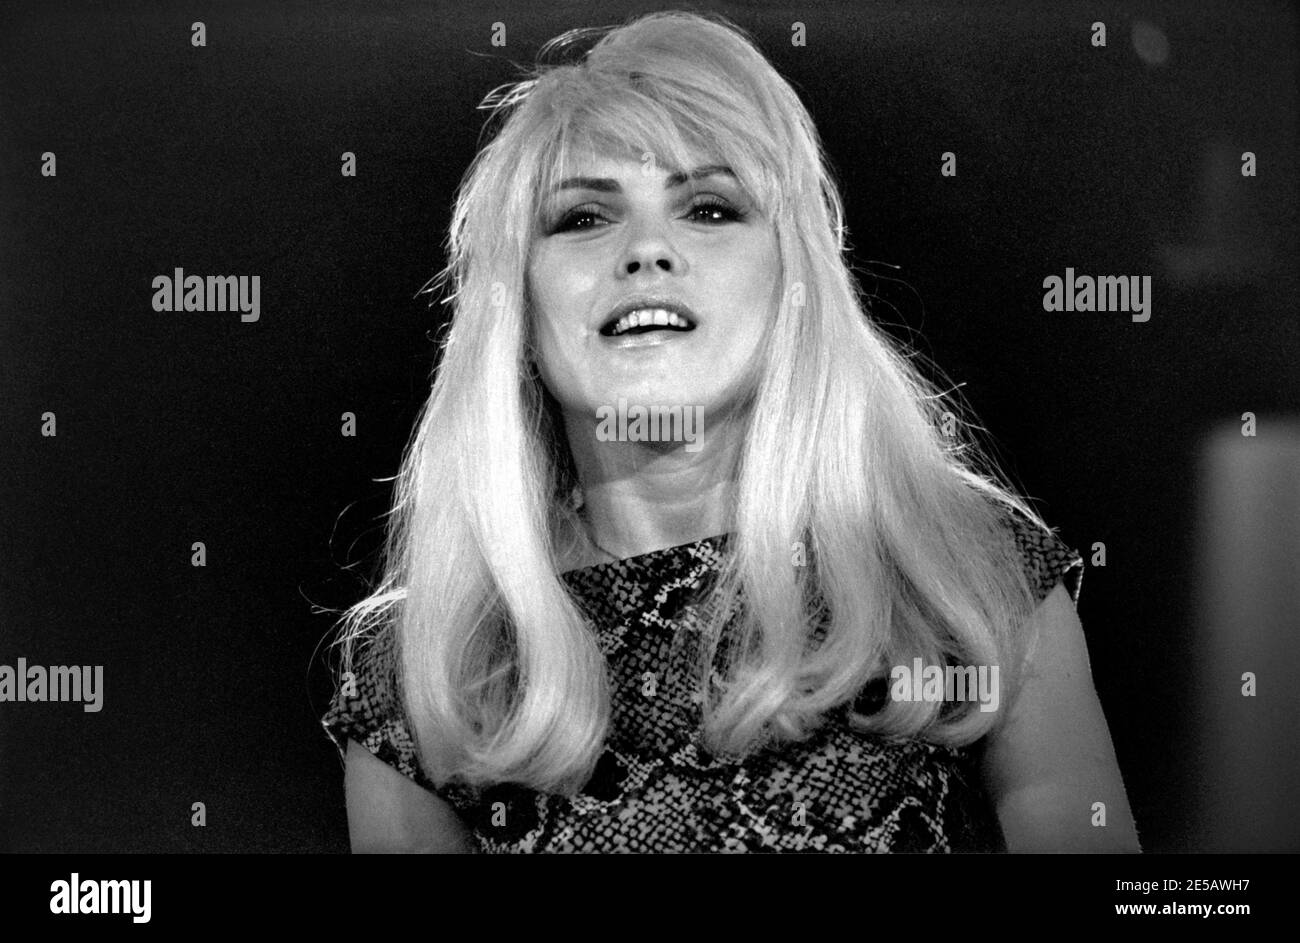 HILVERSUM, PAESI BASSI - 05 MAGGIO 1982: Deborah Harry conosciuto anche come Blondie durante gli studi dello spettacolo hitparade olandese Toppop. Foto Stock